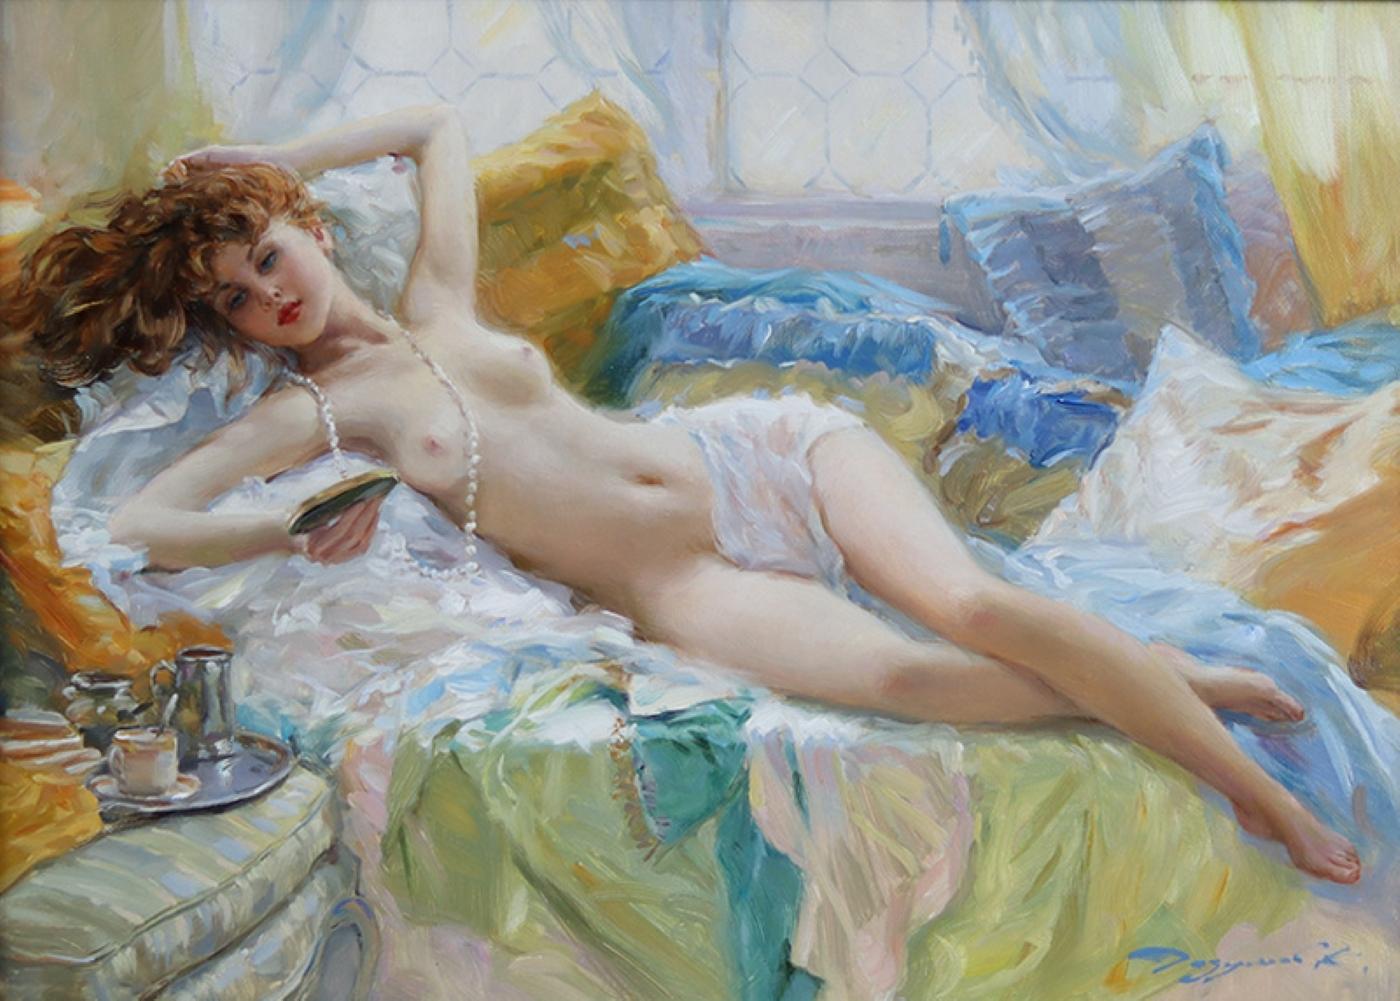 Elegante liegende Nackte mit Perlen – Painting von Konstantin Razumov 